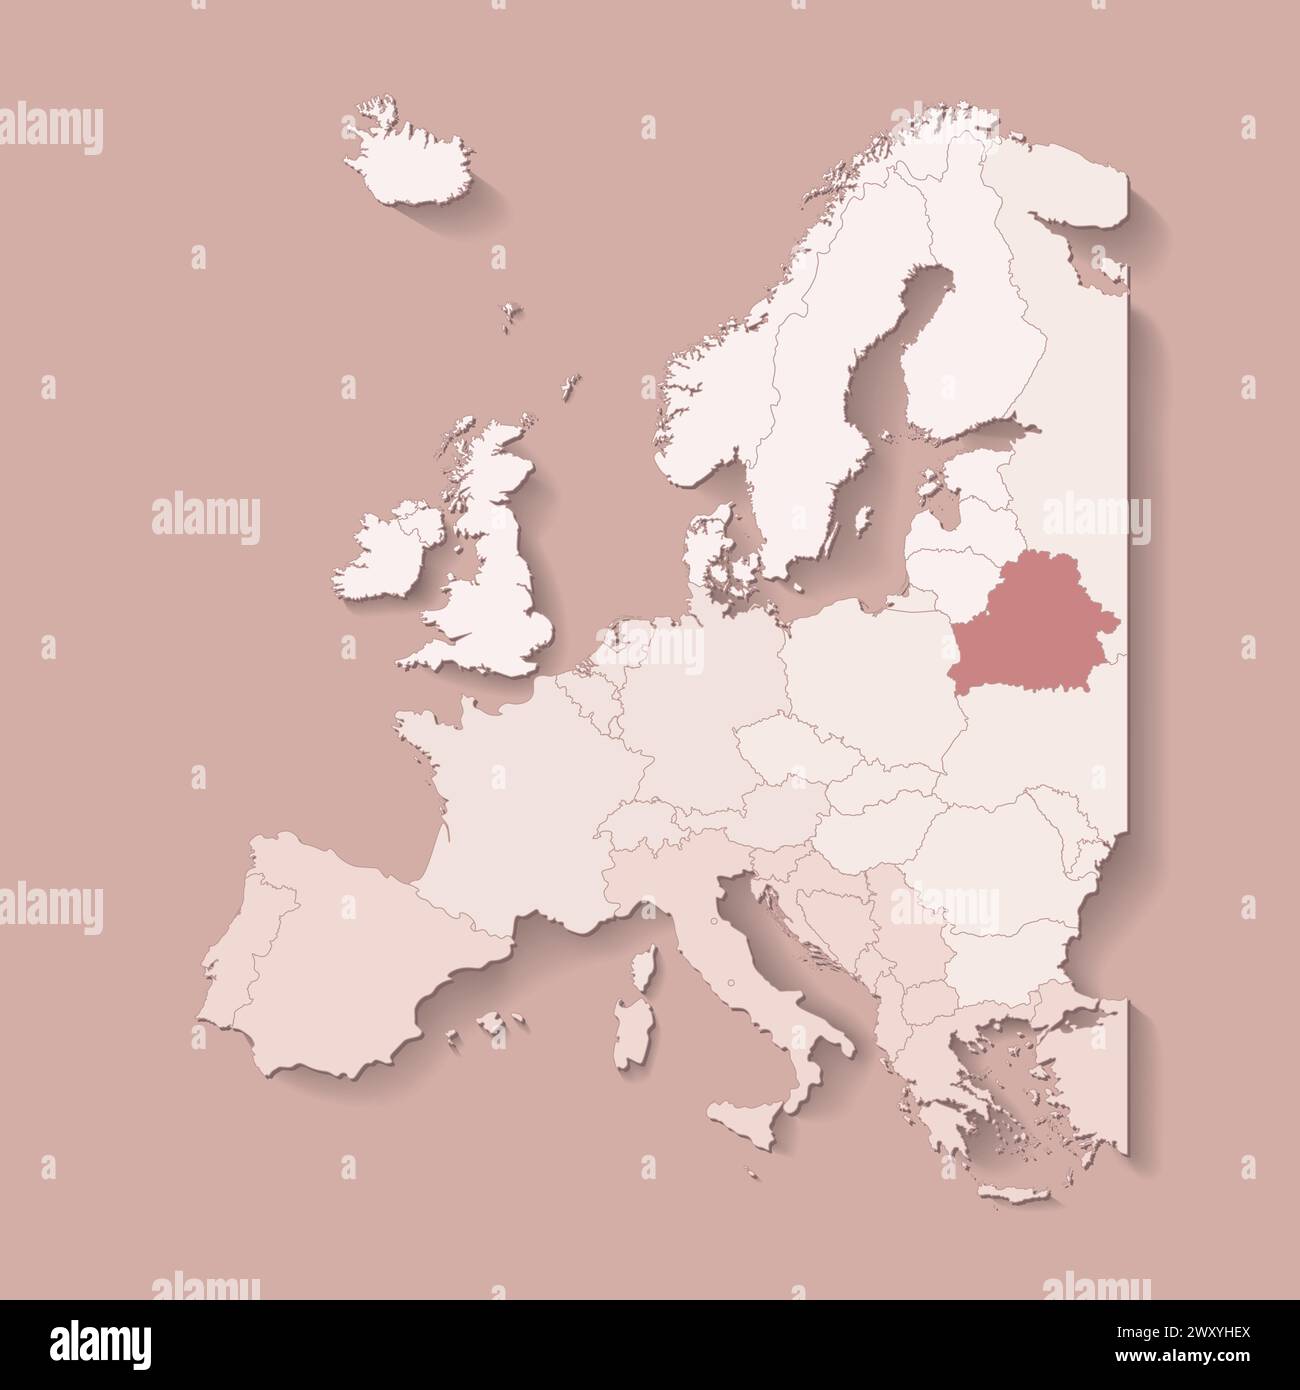 Vektor-Illustration mit europäischem Land mit Grenzen von staaten und markiertem Land Belarus. Politische Karte in braunen Farben mit West-, Süd- und etc.-Re Stock Vektor